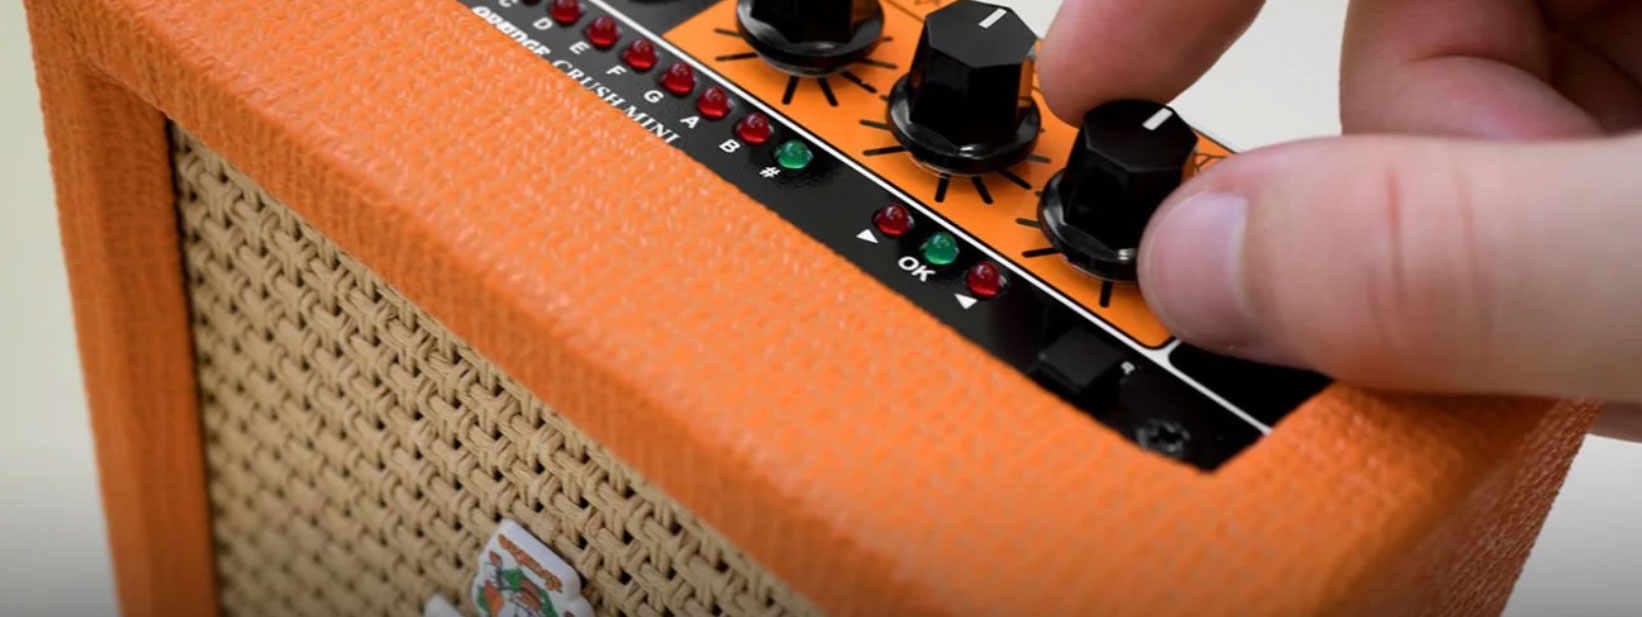 Orange Crush Mini 3w - Mini amplificador para guitarra - Variation 3